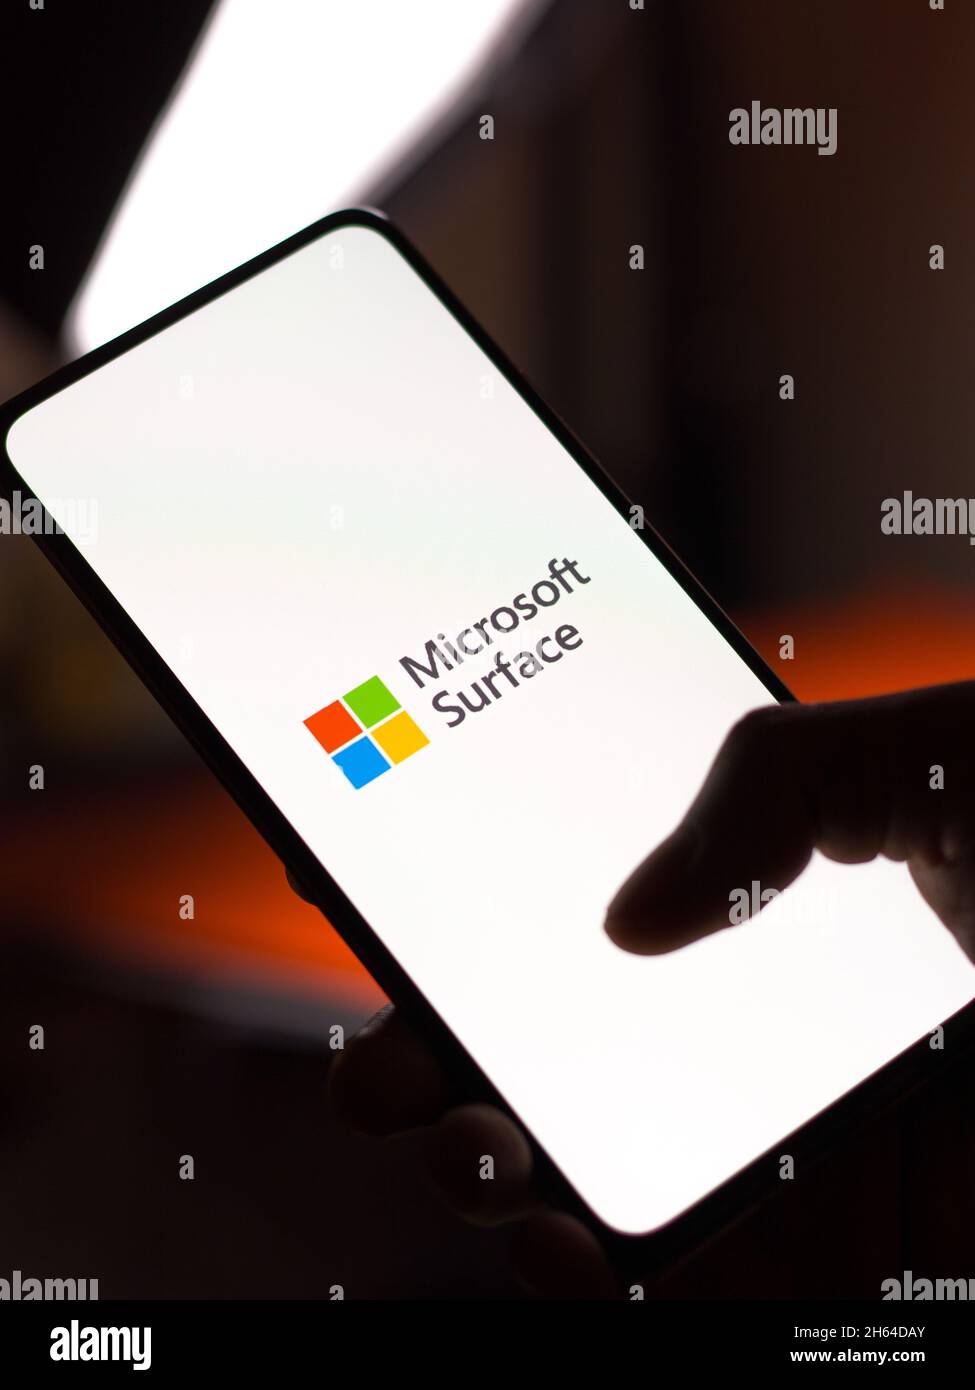 West Bangal, India - November 11, 2021 : Microsoft Surface logo on phone screen stock image. Stock Photo